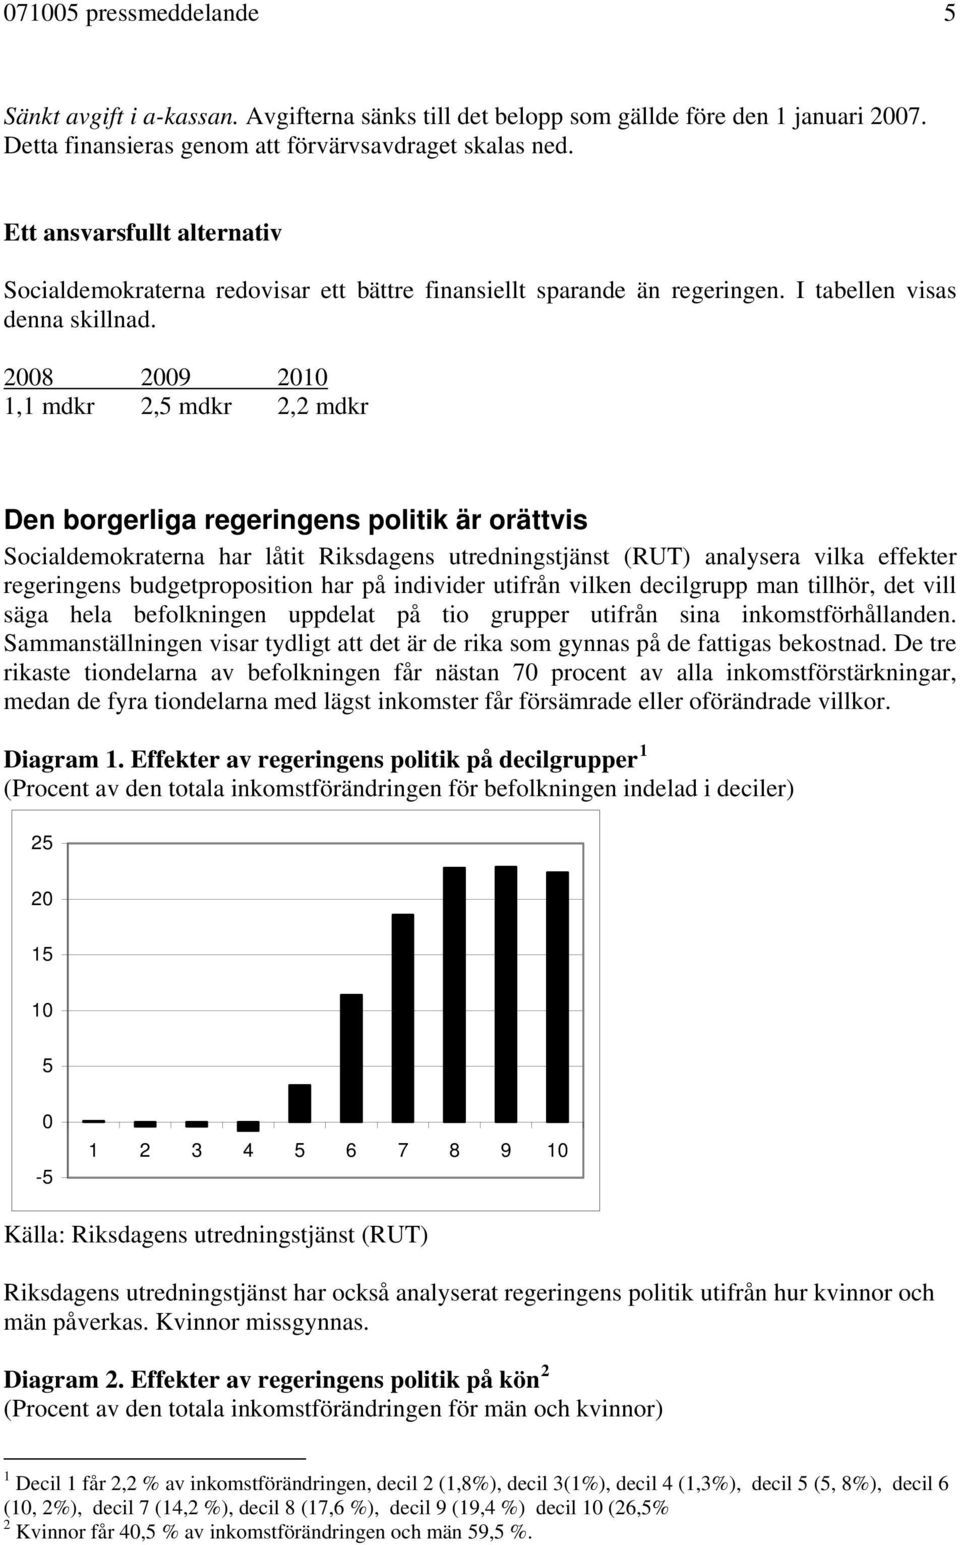 2008 2009 2010 1,1 mdkr 2,5 mdkr 2,2 mdkr Den borgerliga regeringens politik är orättvis Socialdemokraterna har låtit Riksdagens utredningstjänst (RUT) analysera vilka effekter regeringens